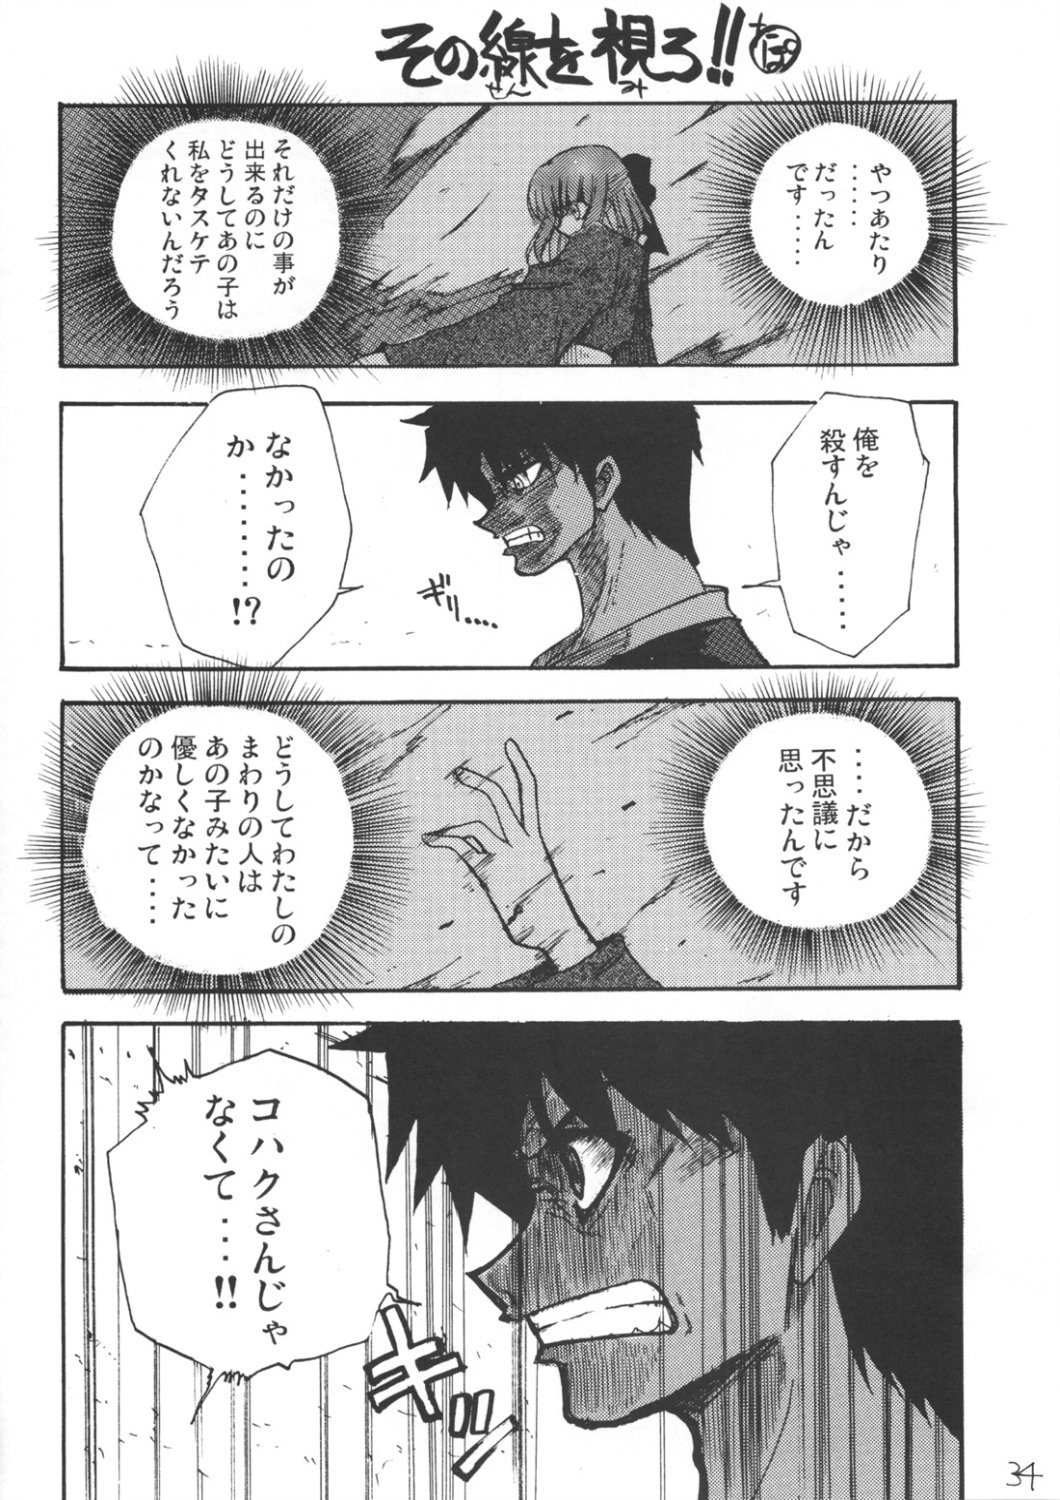 [Inochi no Furusato, Neko-bus Tei, Zangyaku Koui Teate] Akihamania [AKIHA MANIACS] (Tsukihime) page 33 full